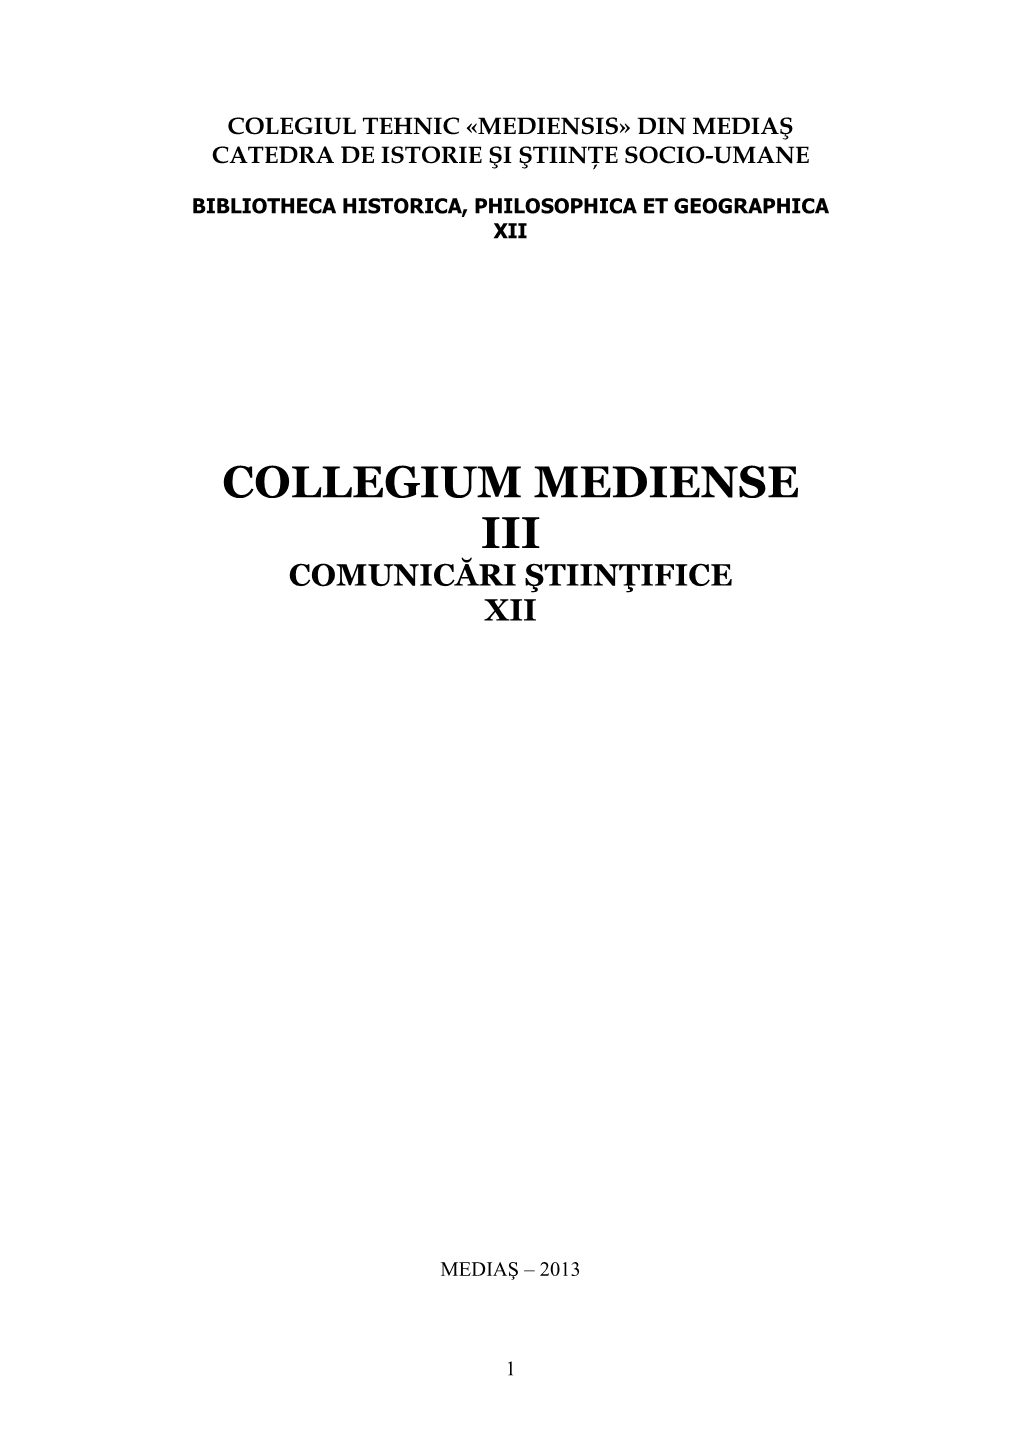 Collegium Mediense Iii Comunicări Ştiinţifice Xii